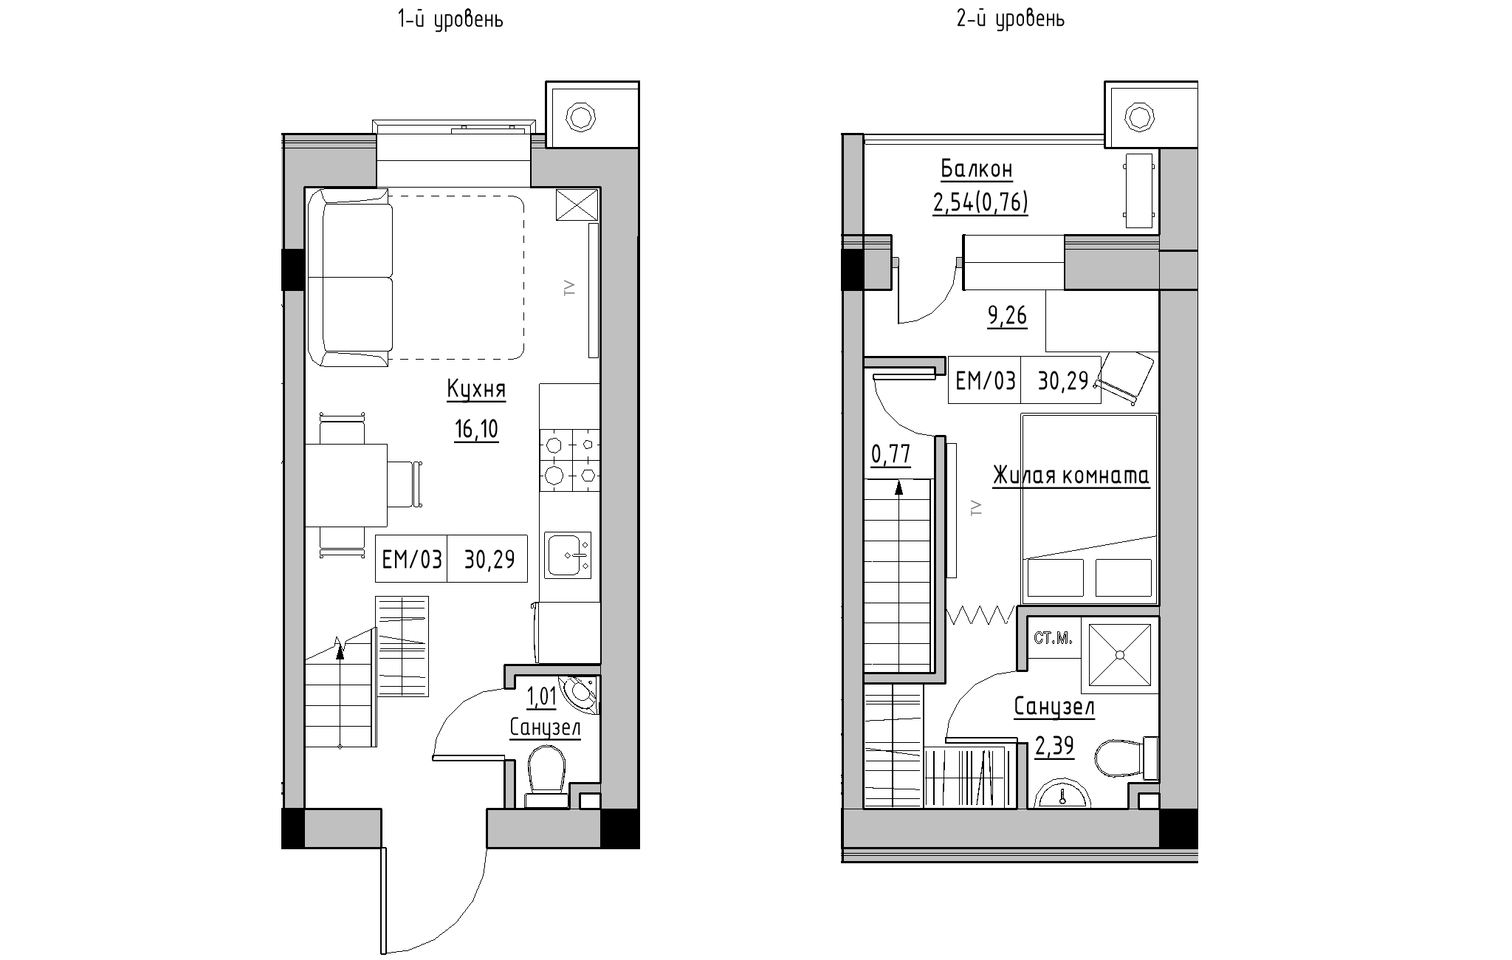 Planning 2-lvl flats area 30.29m2, KS-013-05/0008.